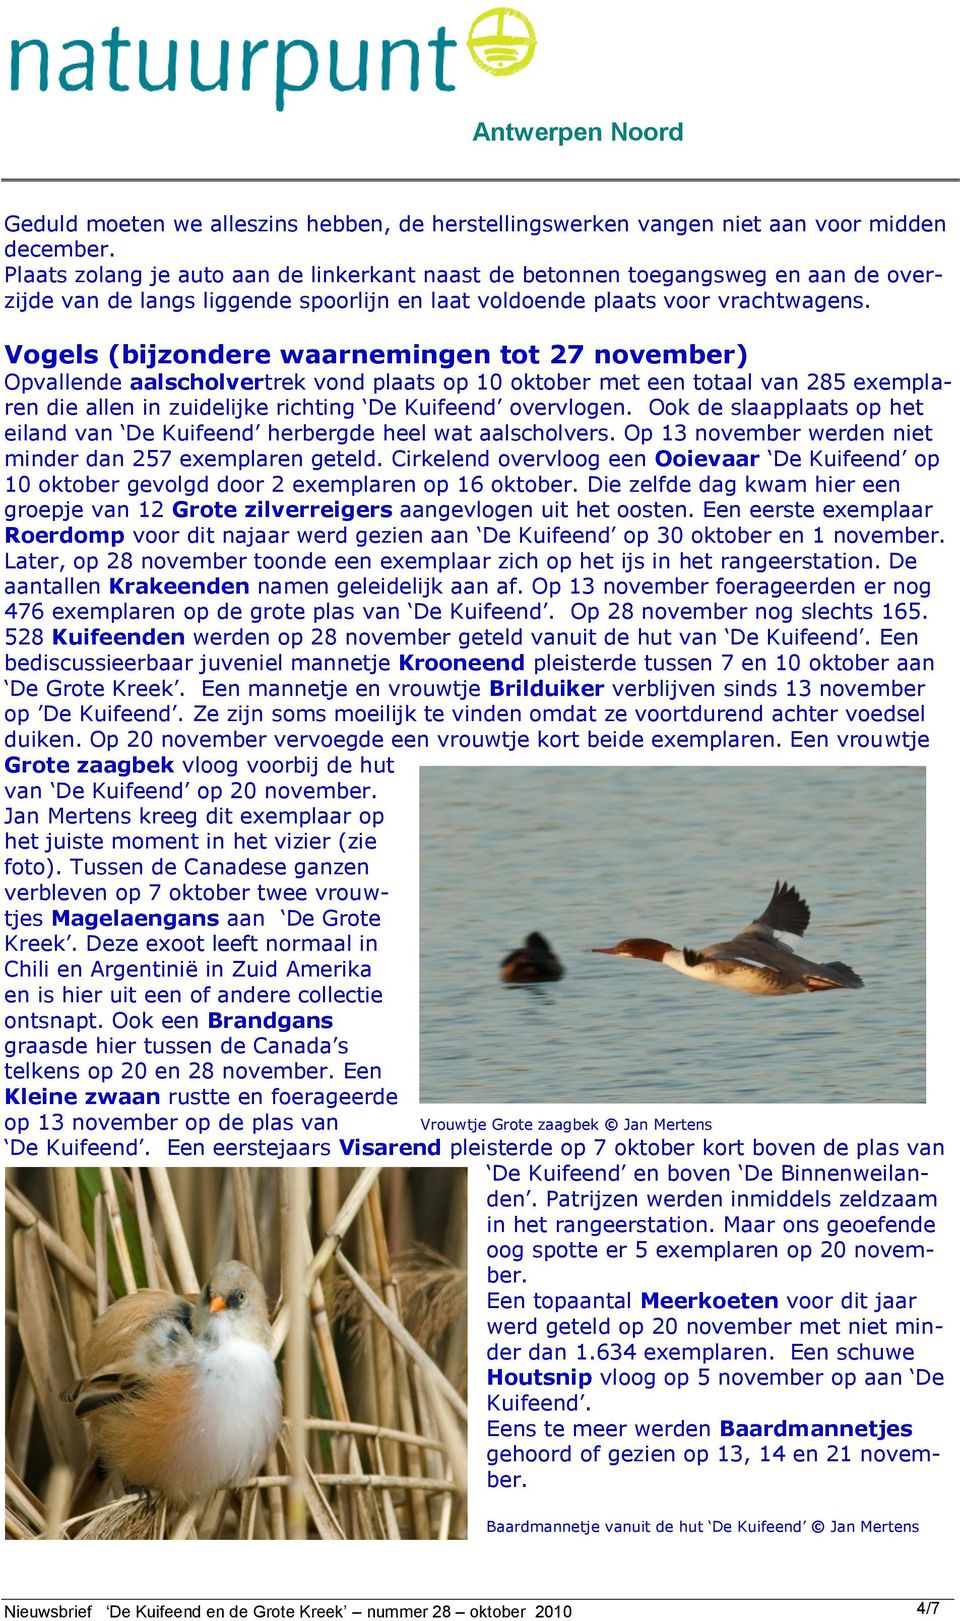 Vogels (bijzondere waarnemingen tot 27 november) Opvallende aalscholvertrek vond plaats op 10 oktober met een totaal van 285 exemplaren die allen in zuidelijke richting De Kuifeend overvlogen.